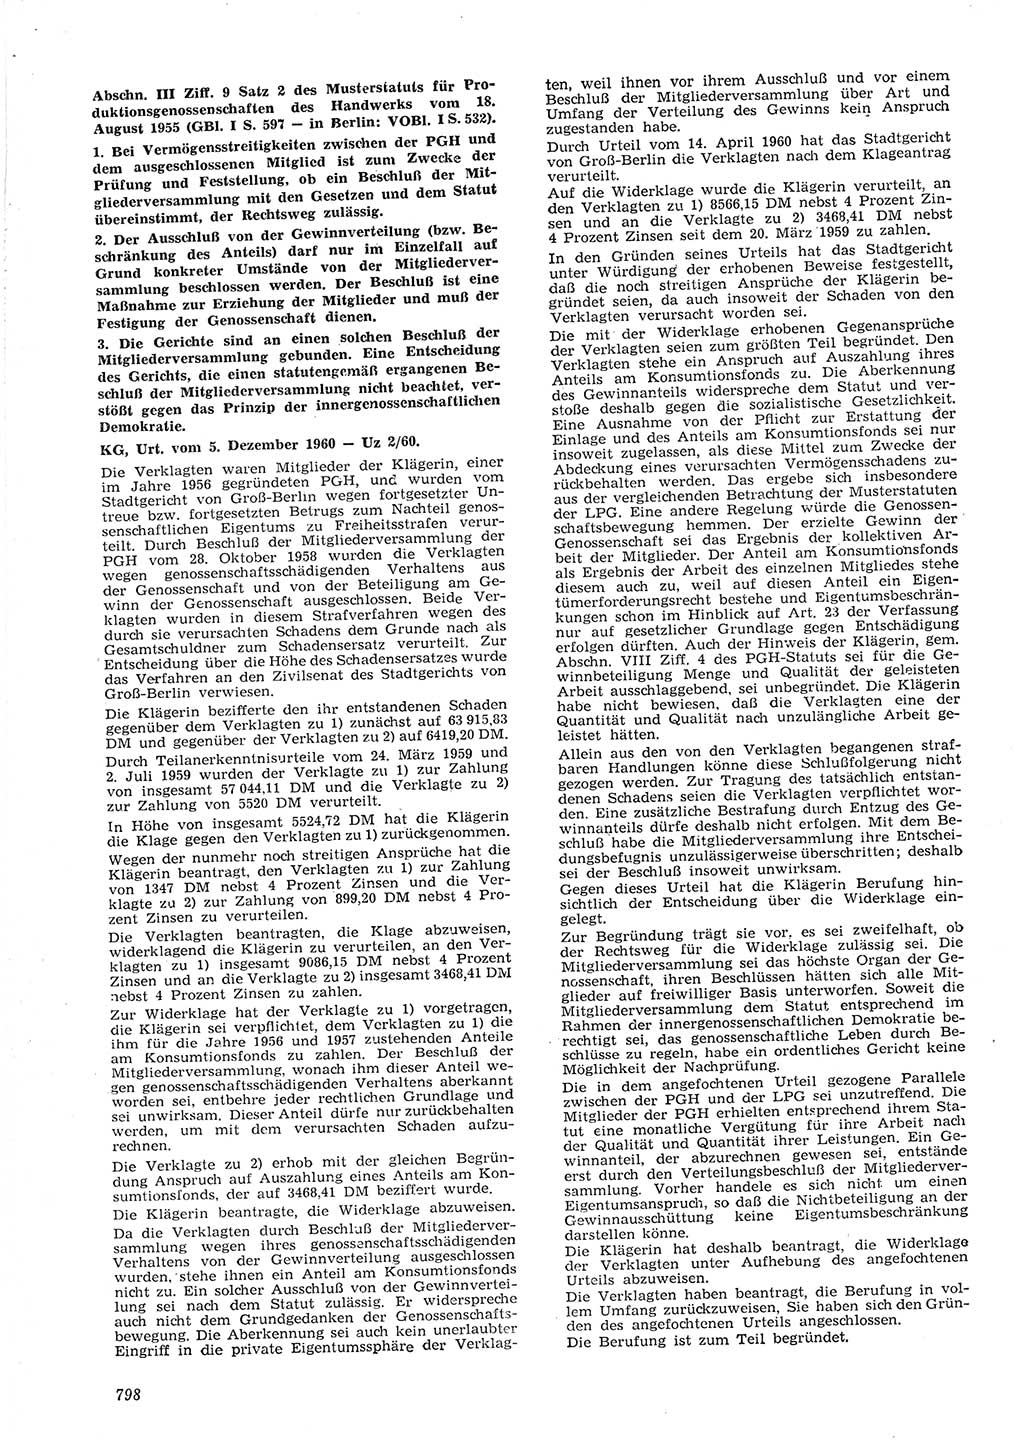 Neue Justiz (NJ), Zeitschrift für Recht und Rechtswissenschaft [Deutsche Demokratische Republik (DDR)], 15. Jahrgang 1961, Seite 798 (NJ DDR 1961, S. 798)